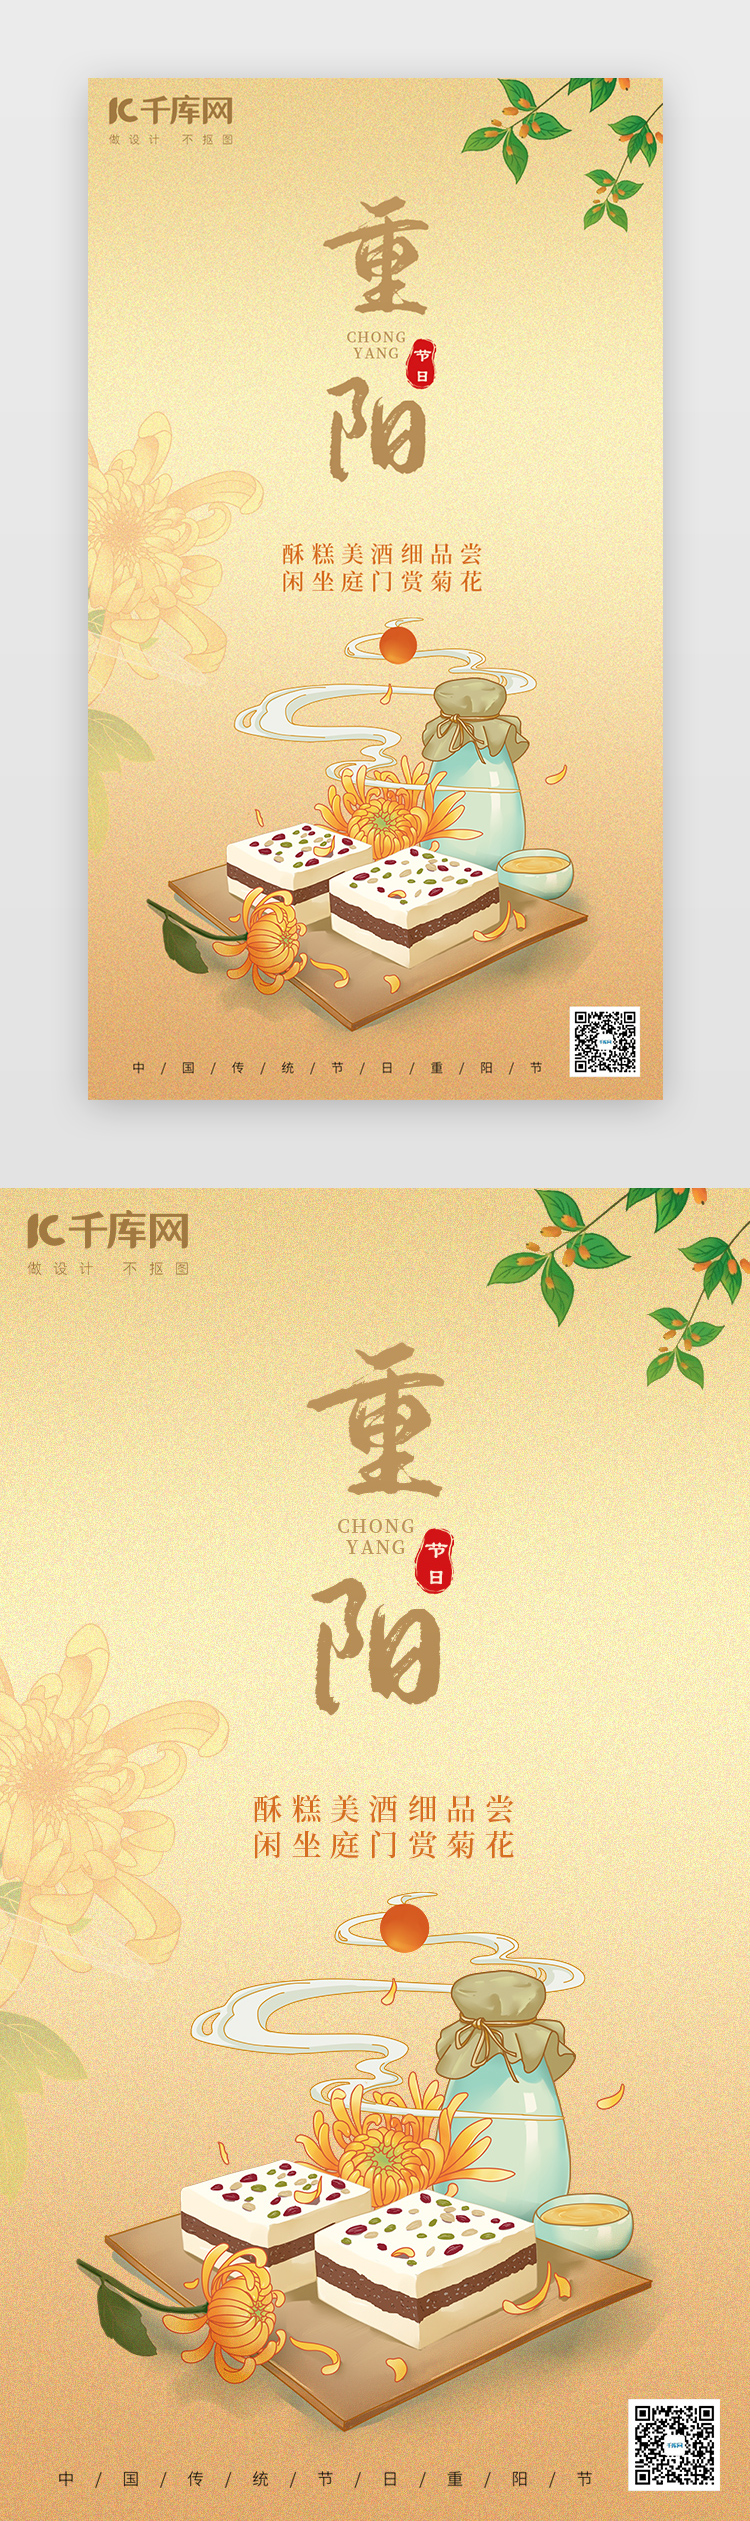 重阳节 闪屏/介绍页中国风黄色节日海报图片